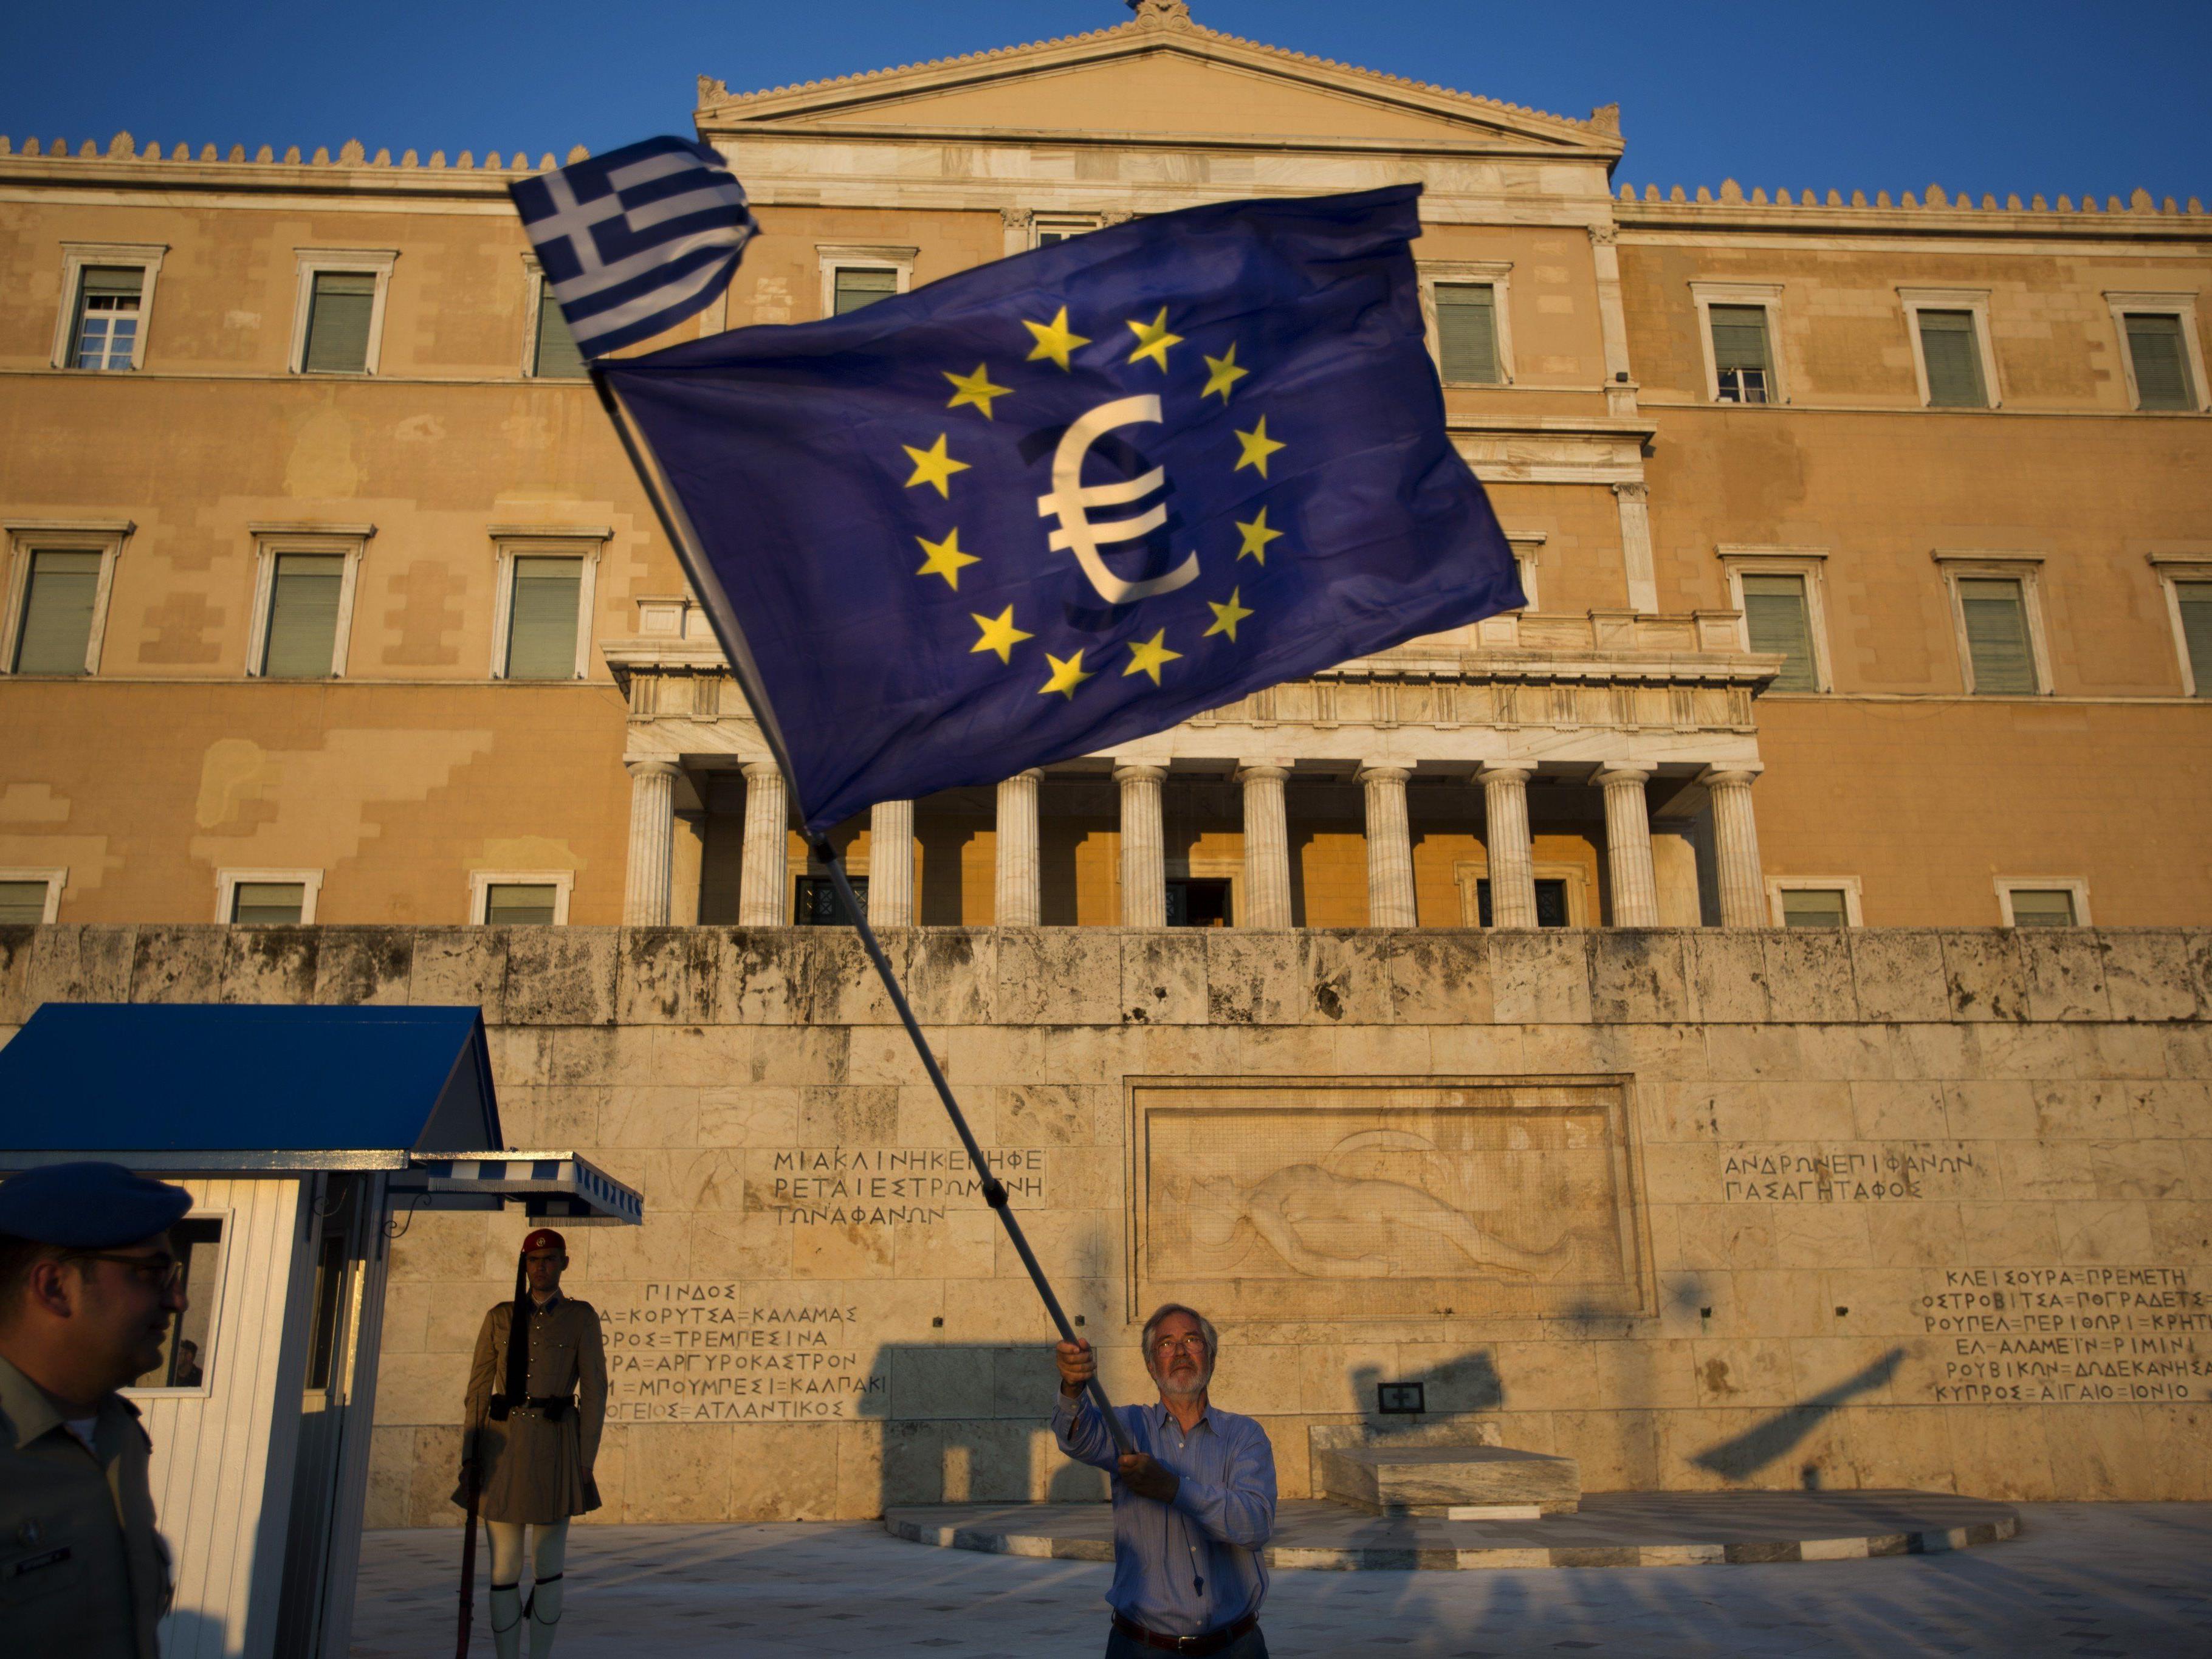 Tausende demonstrierten in Athen für den Verbleib im Euroland.